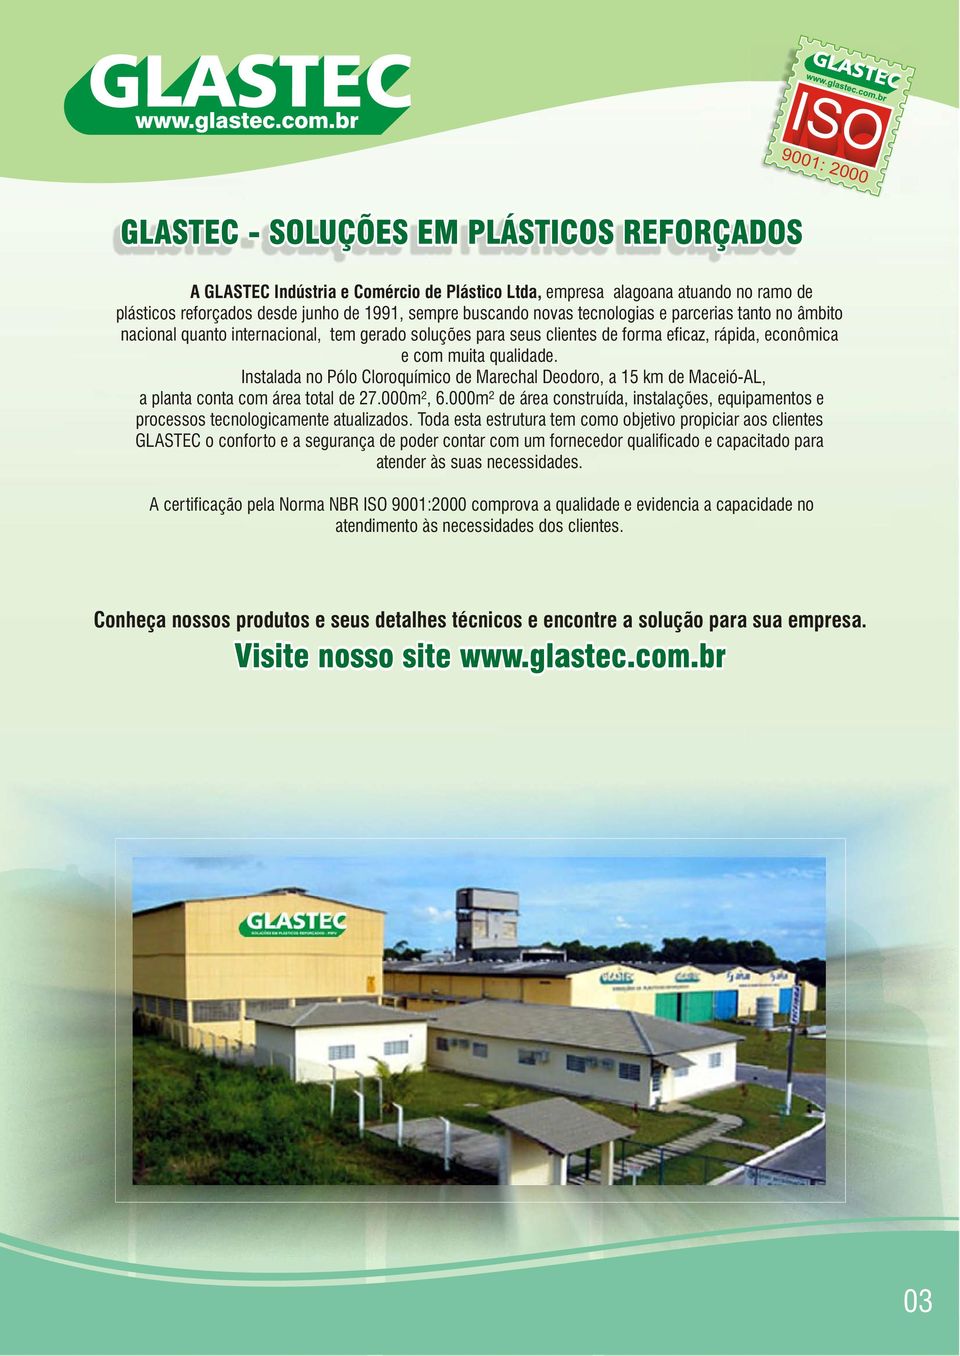 Instalada no Pólo Cloroquímico de Marechal Deodoro, a 15 km de Maceió-AL, a planta conta com área total de 27.000m², 6.